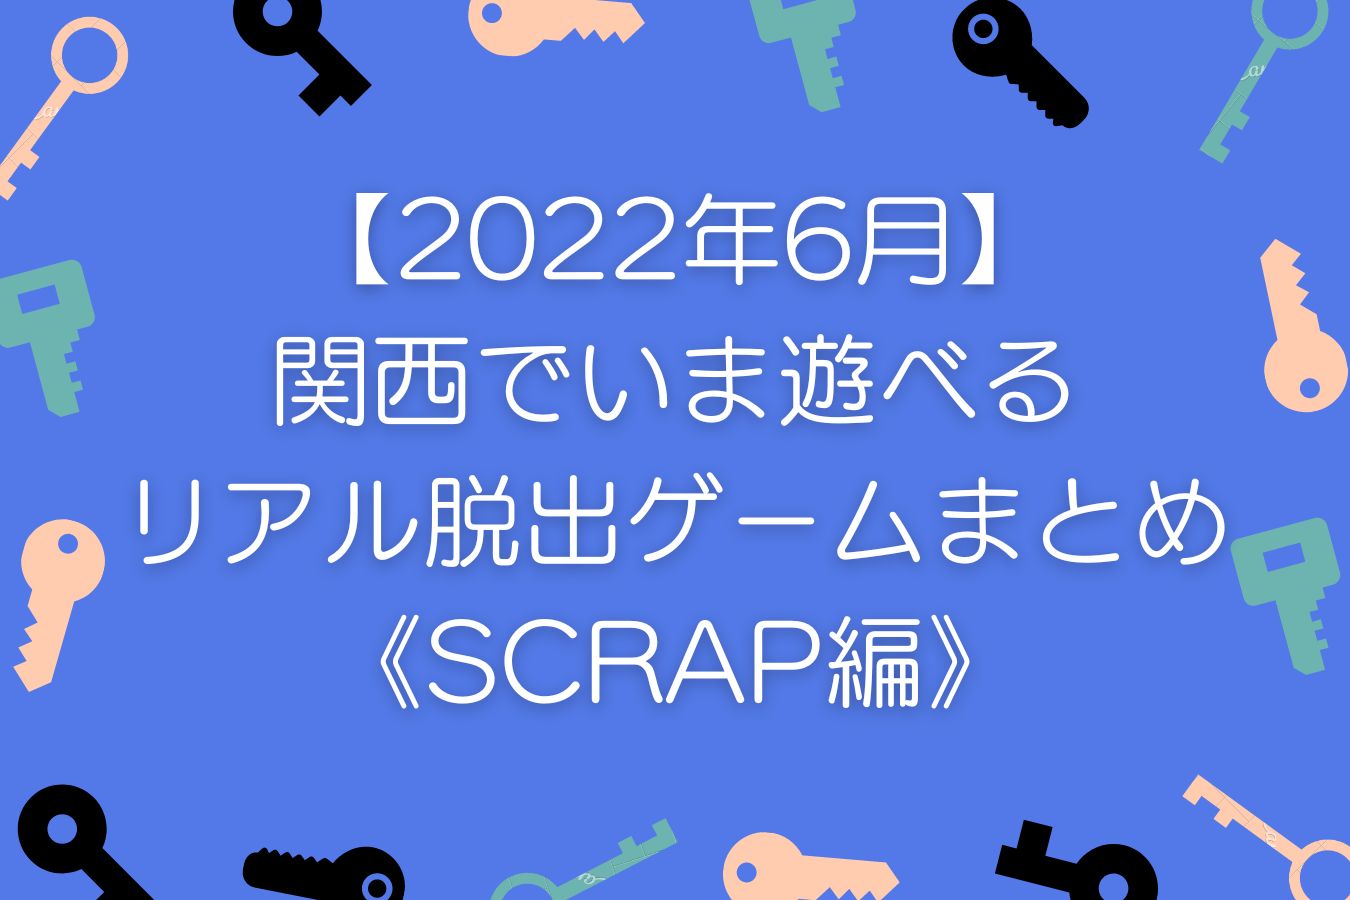 【2022年6月】-関西でいま遊べる-リアル脱出ゲームまとめ-《SCRAP編》